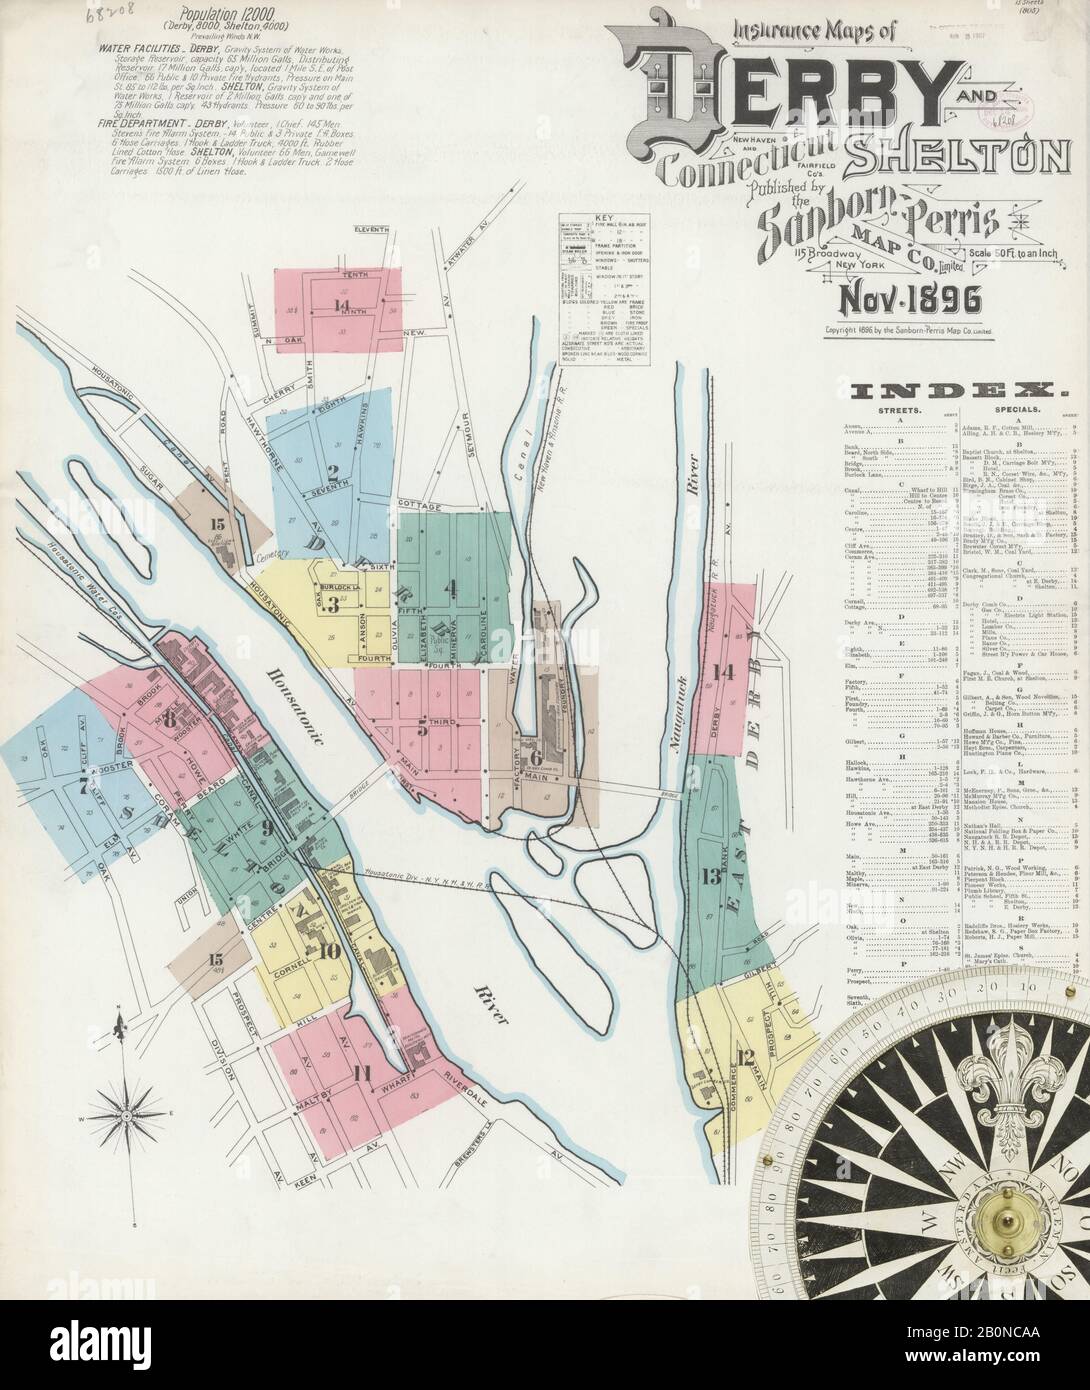 Bild 1 von Sanborn Fire Insurance Map aus Derby, New Haven County, Connecticut. Nov. 15 Blatt(e). Umfasst Shelton, Amerika, Straßenkarte mit einem Kompass Aus Dem 19. Jahrhundert Stockfoto